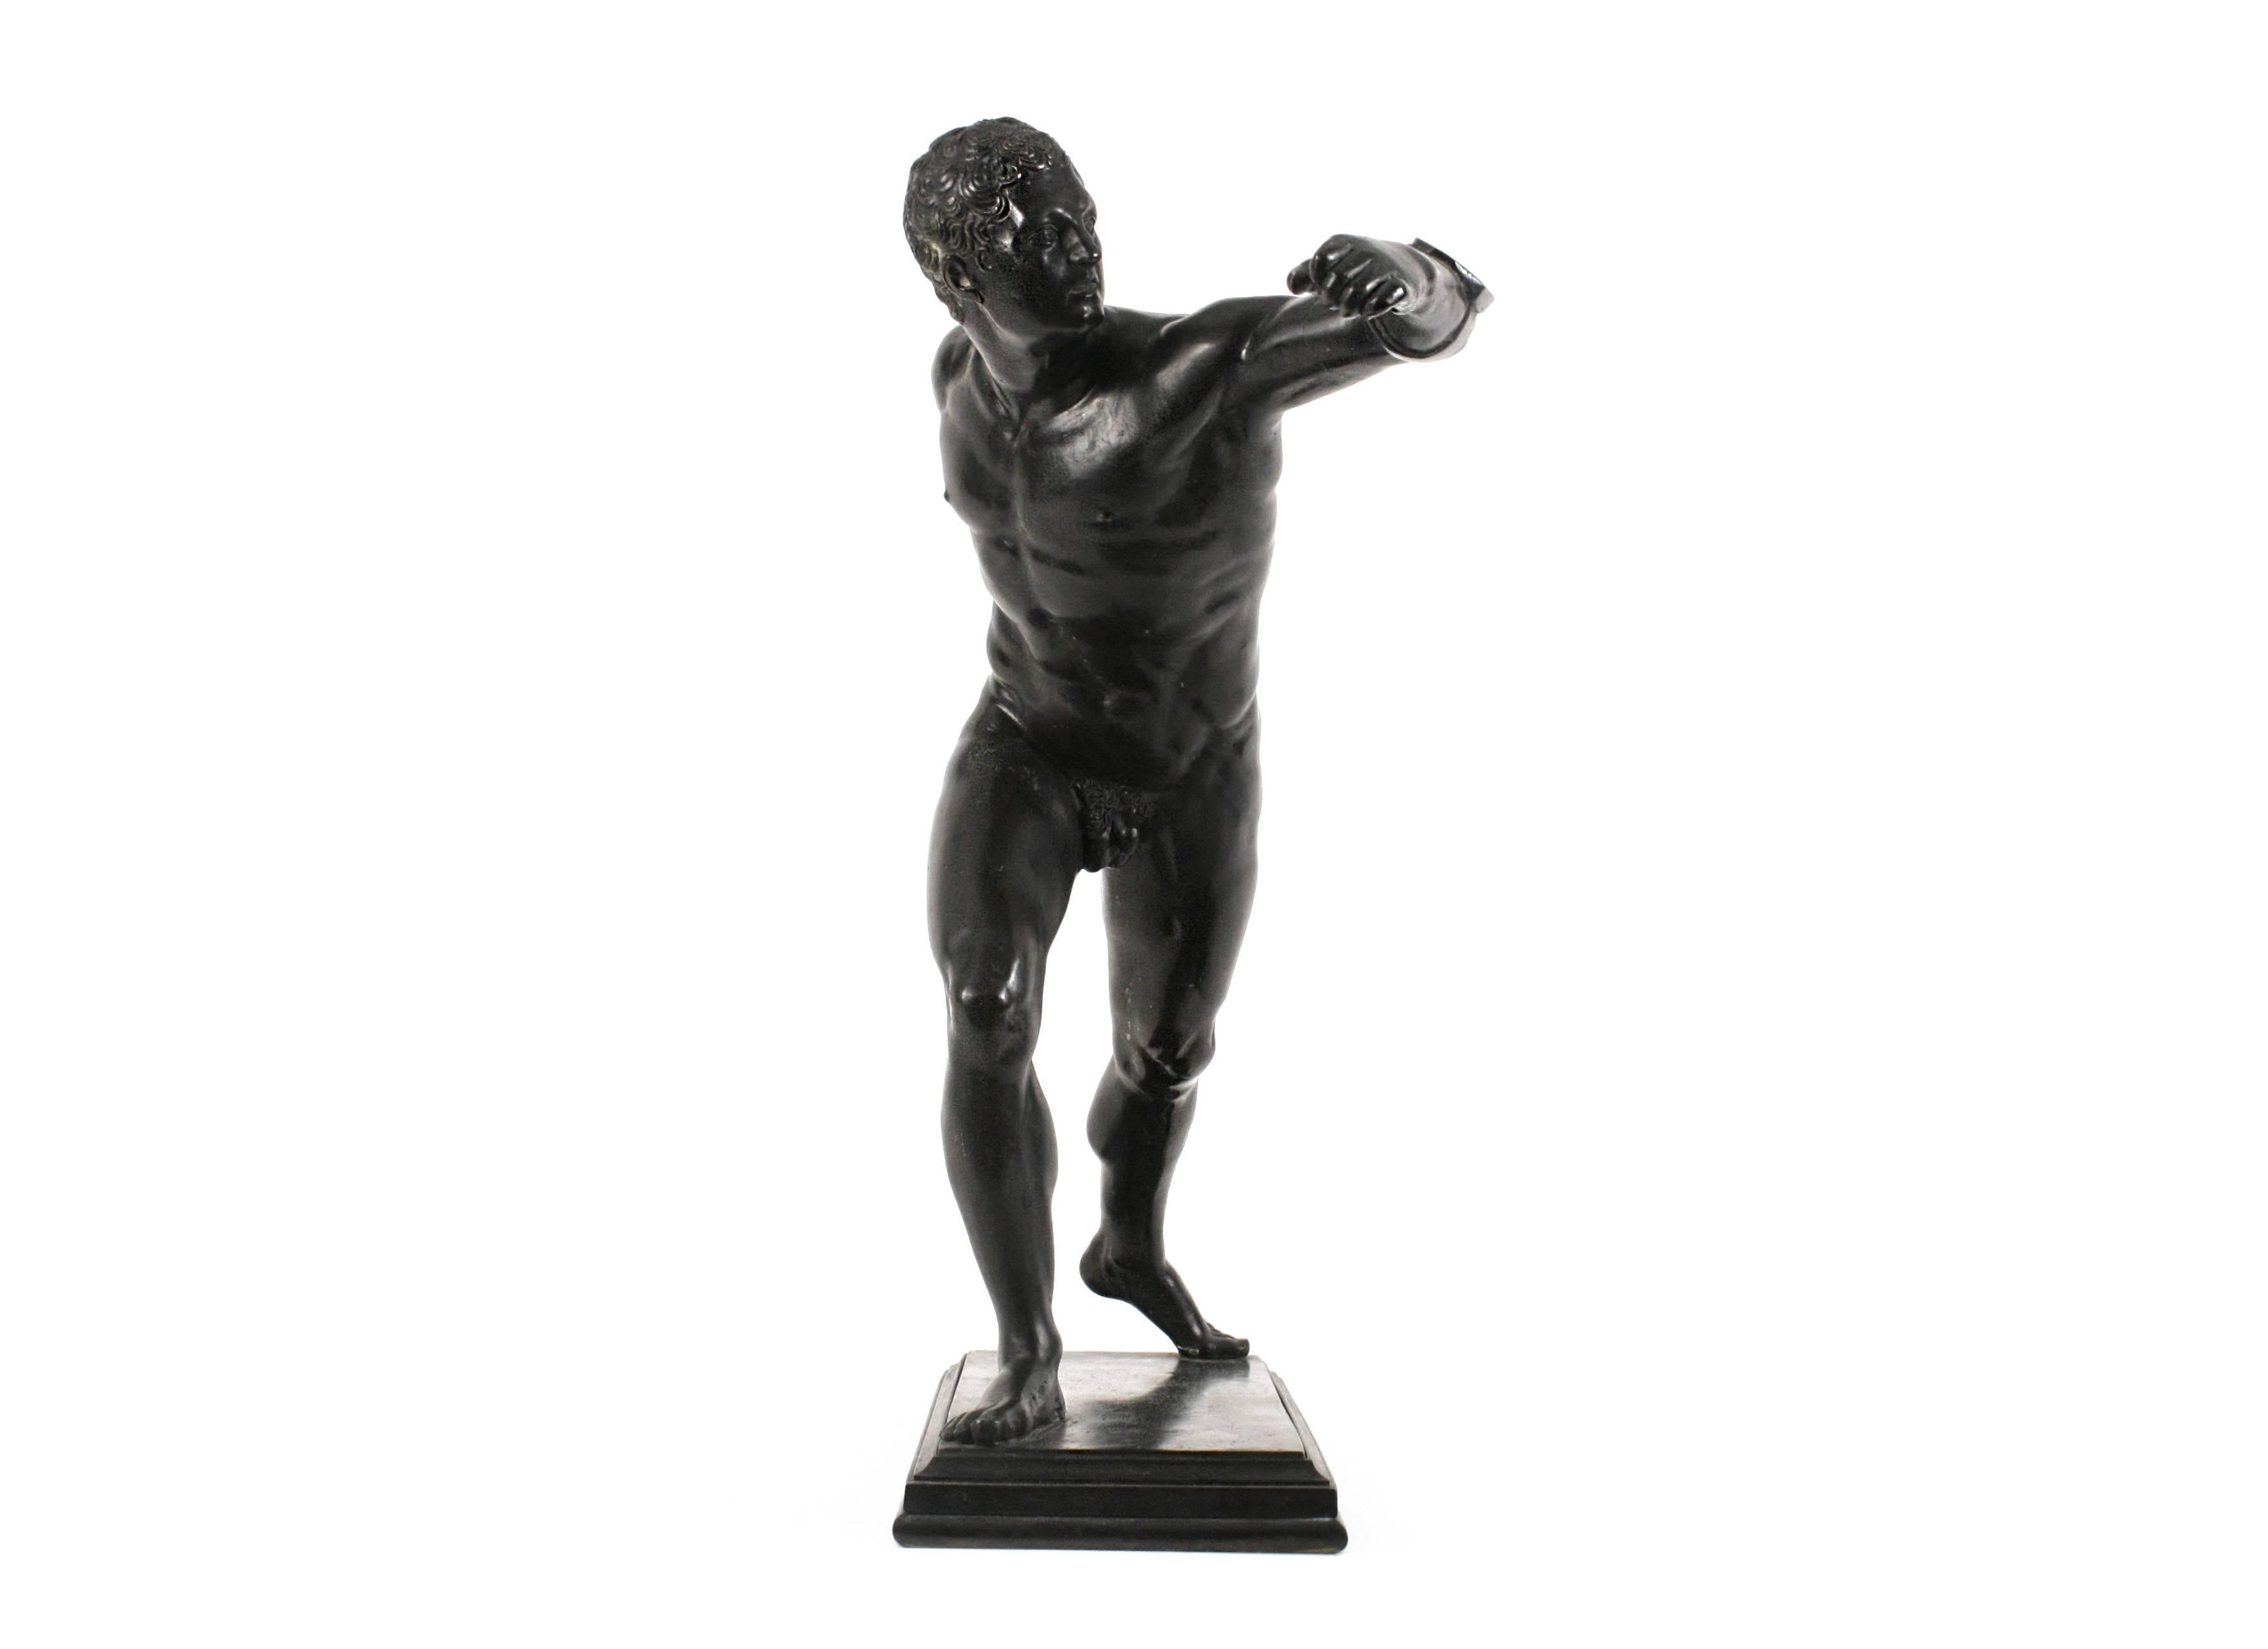 Borghese Gladiator, nach einem antiken Vorbild
große patinierte Bronzeskulptur
Italien, 19. Jahrhundert
H 20 in. (50,8 cm)

Die ursprüngliche Marmorskulptur wurde in den frühen 1600er Jahren in Anzio südlich von Rom gefunden, in den Ruinen eines